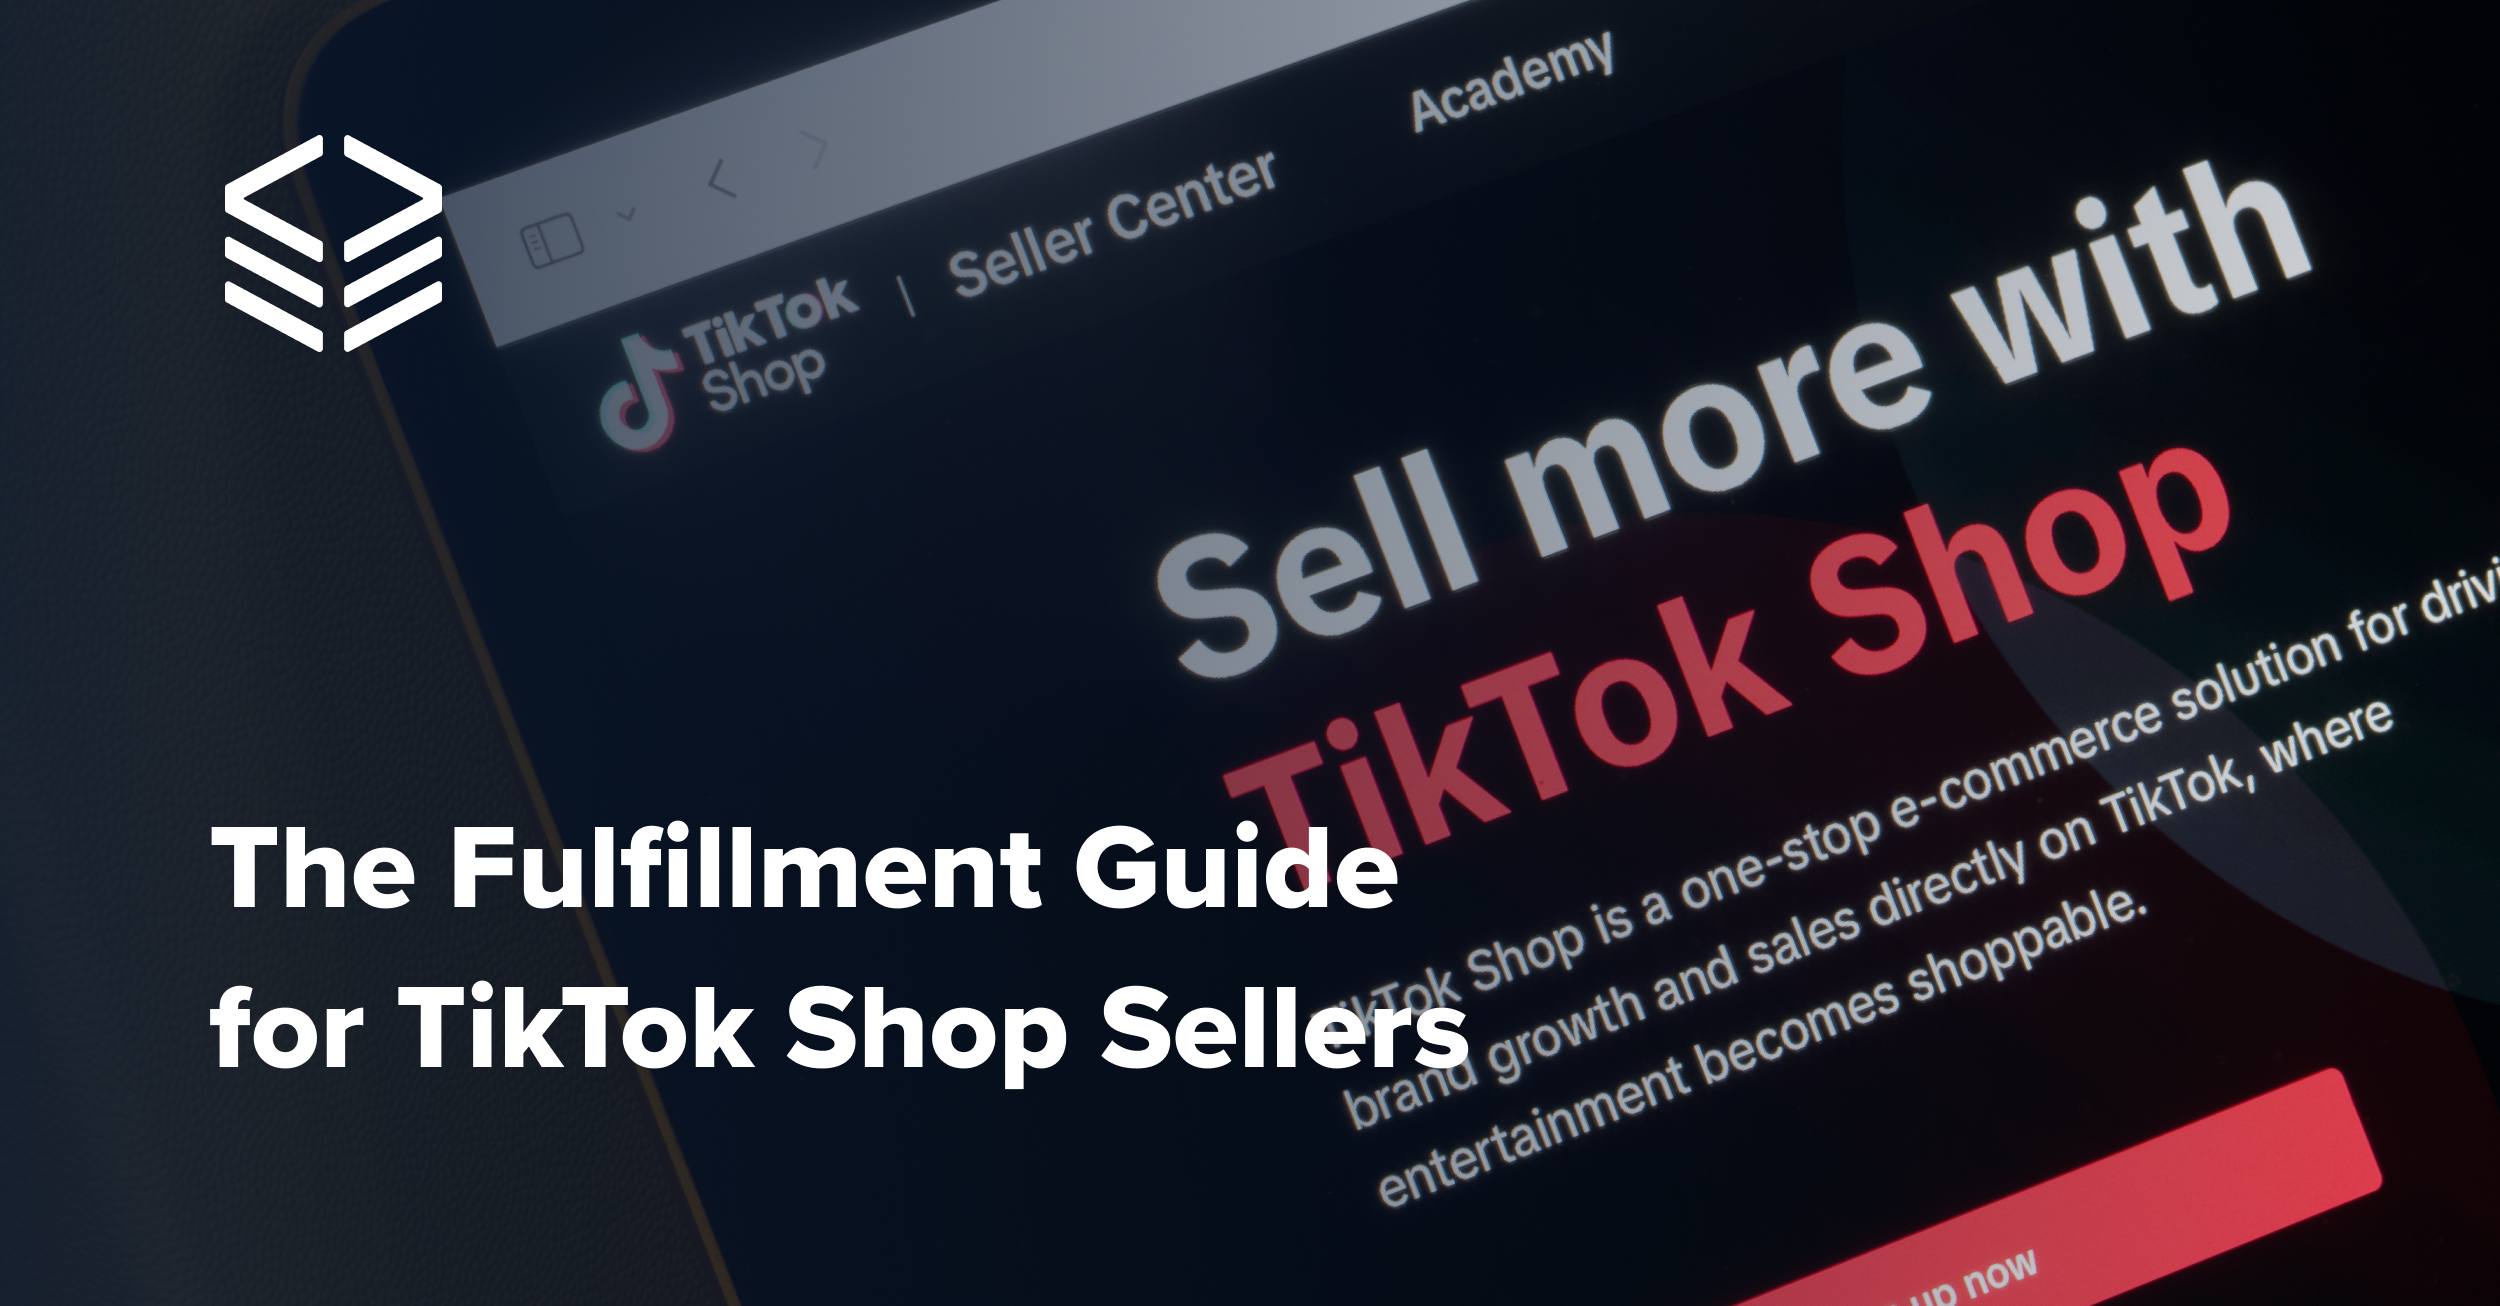 TikTok Shop Fulfillment Guide for Sellers